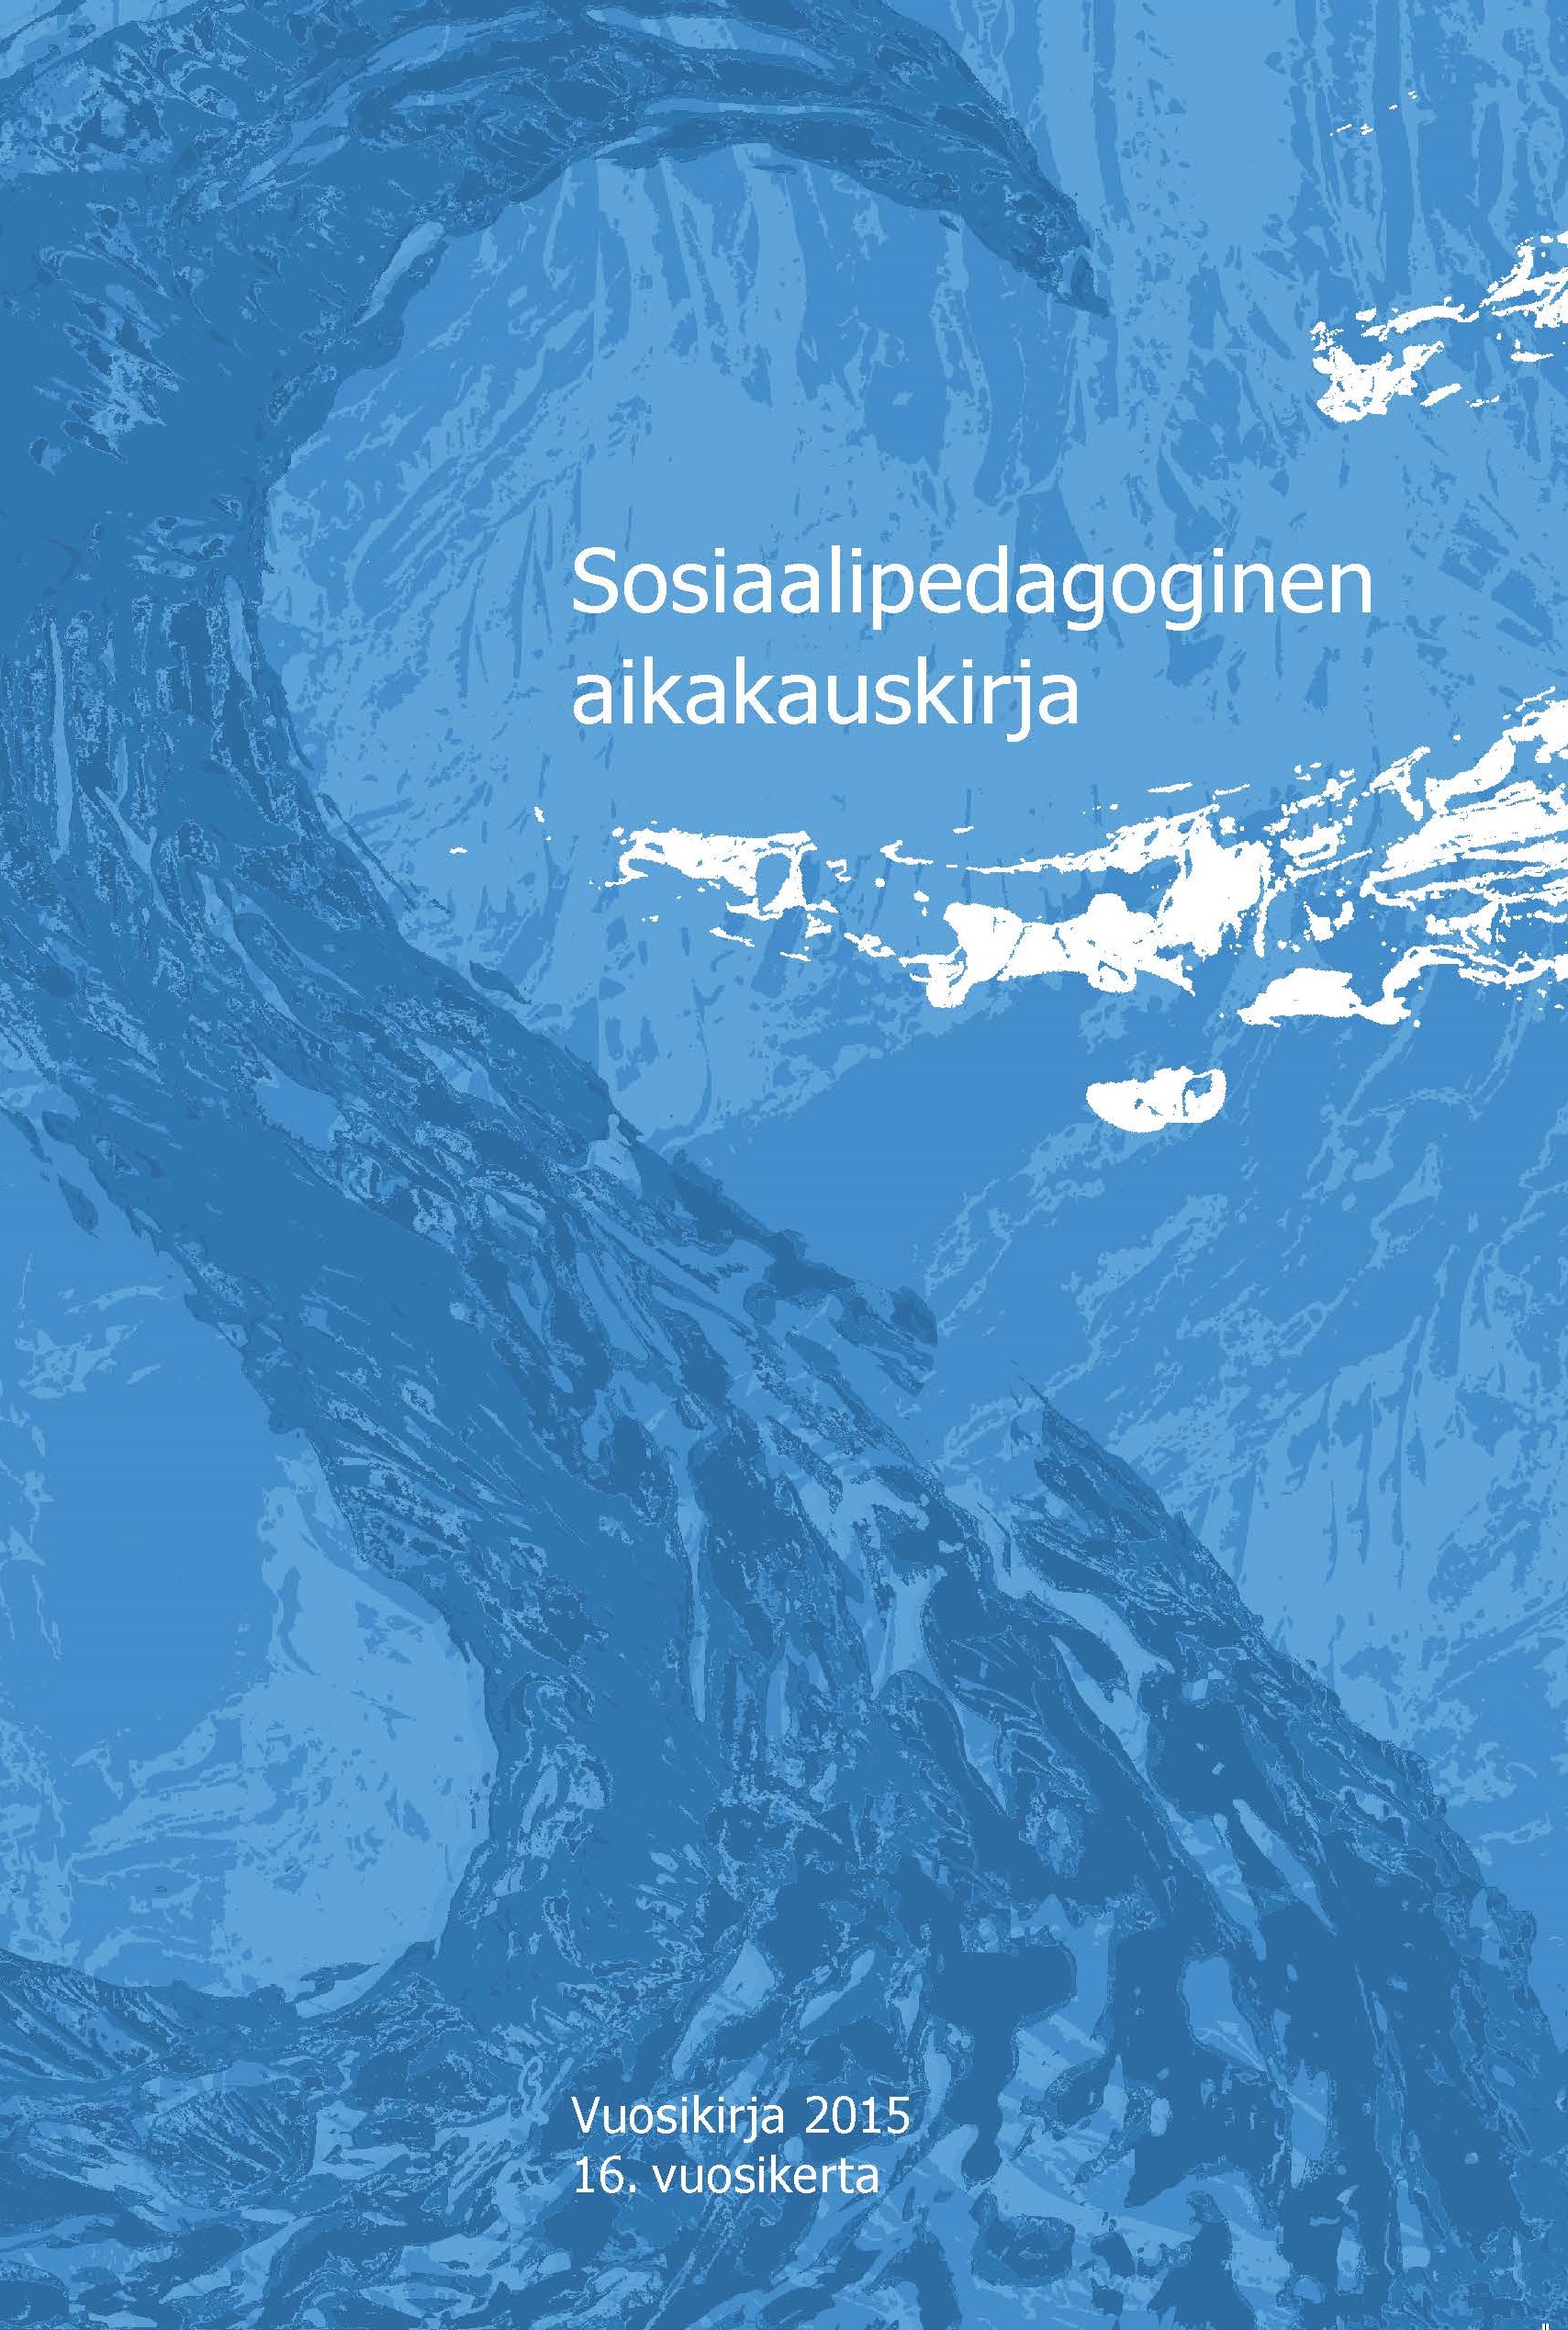 					Näytä Vol 16 (2015): Sosiaalipedagoginen aikakauskirja, vuosikirja 2015
				